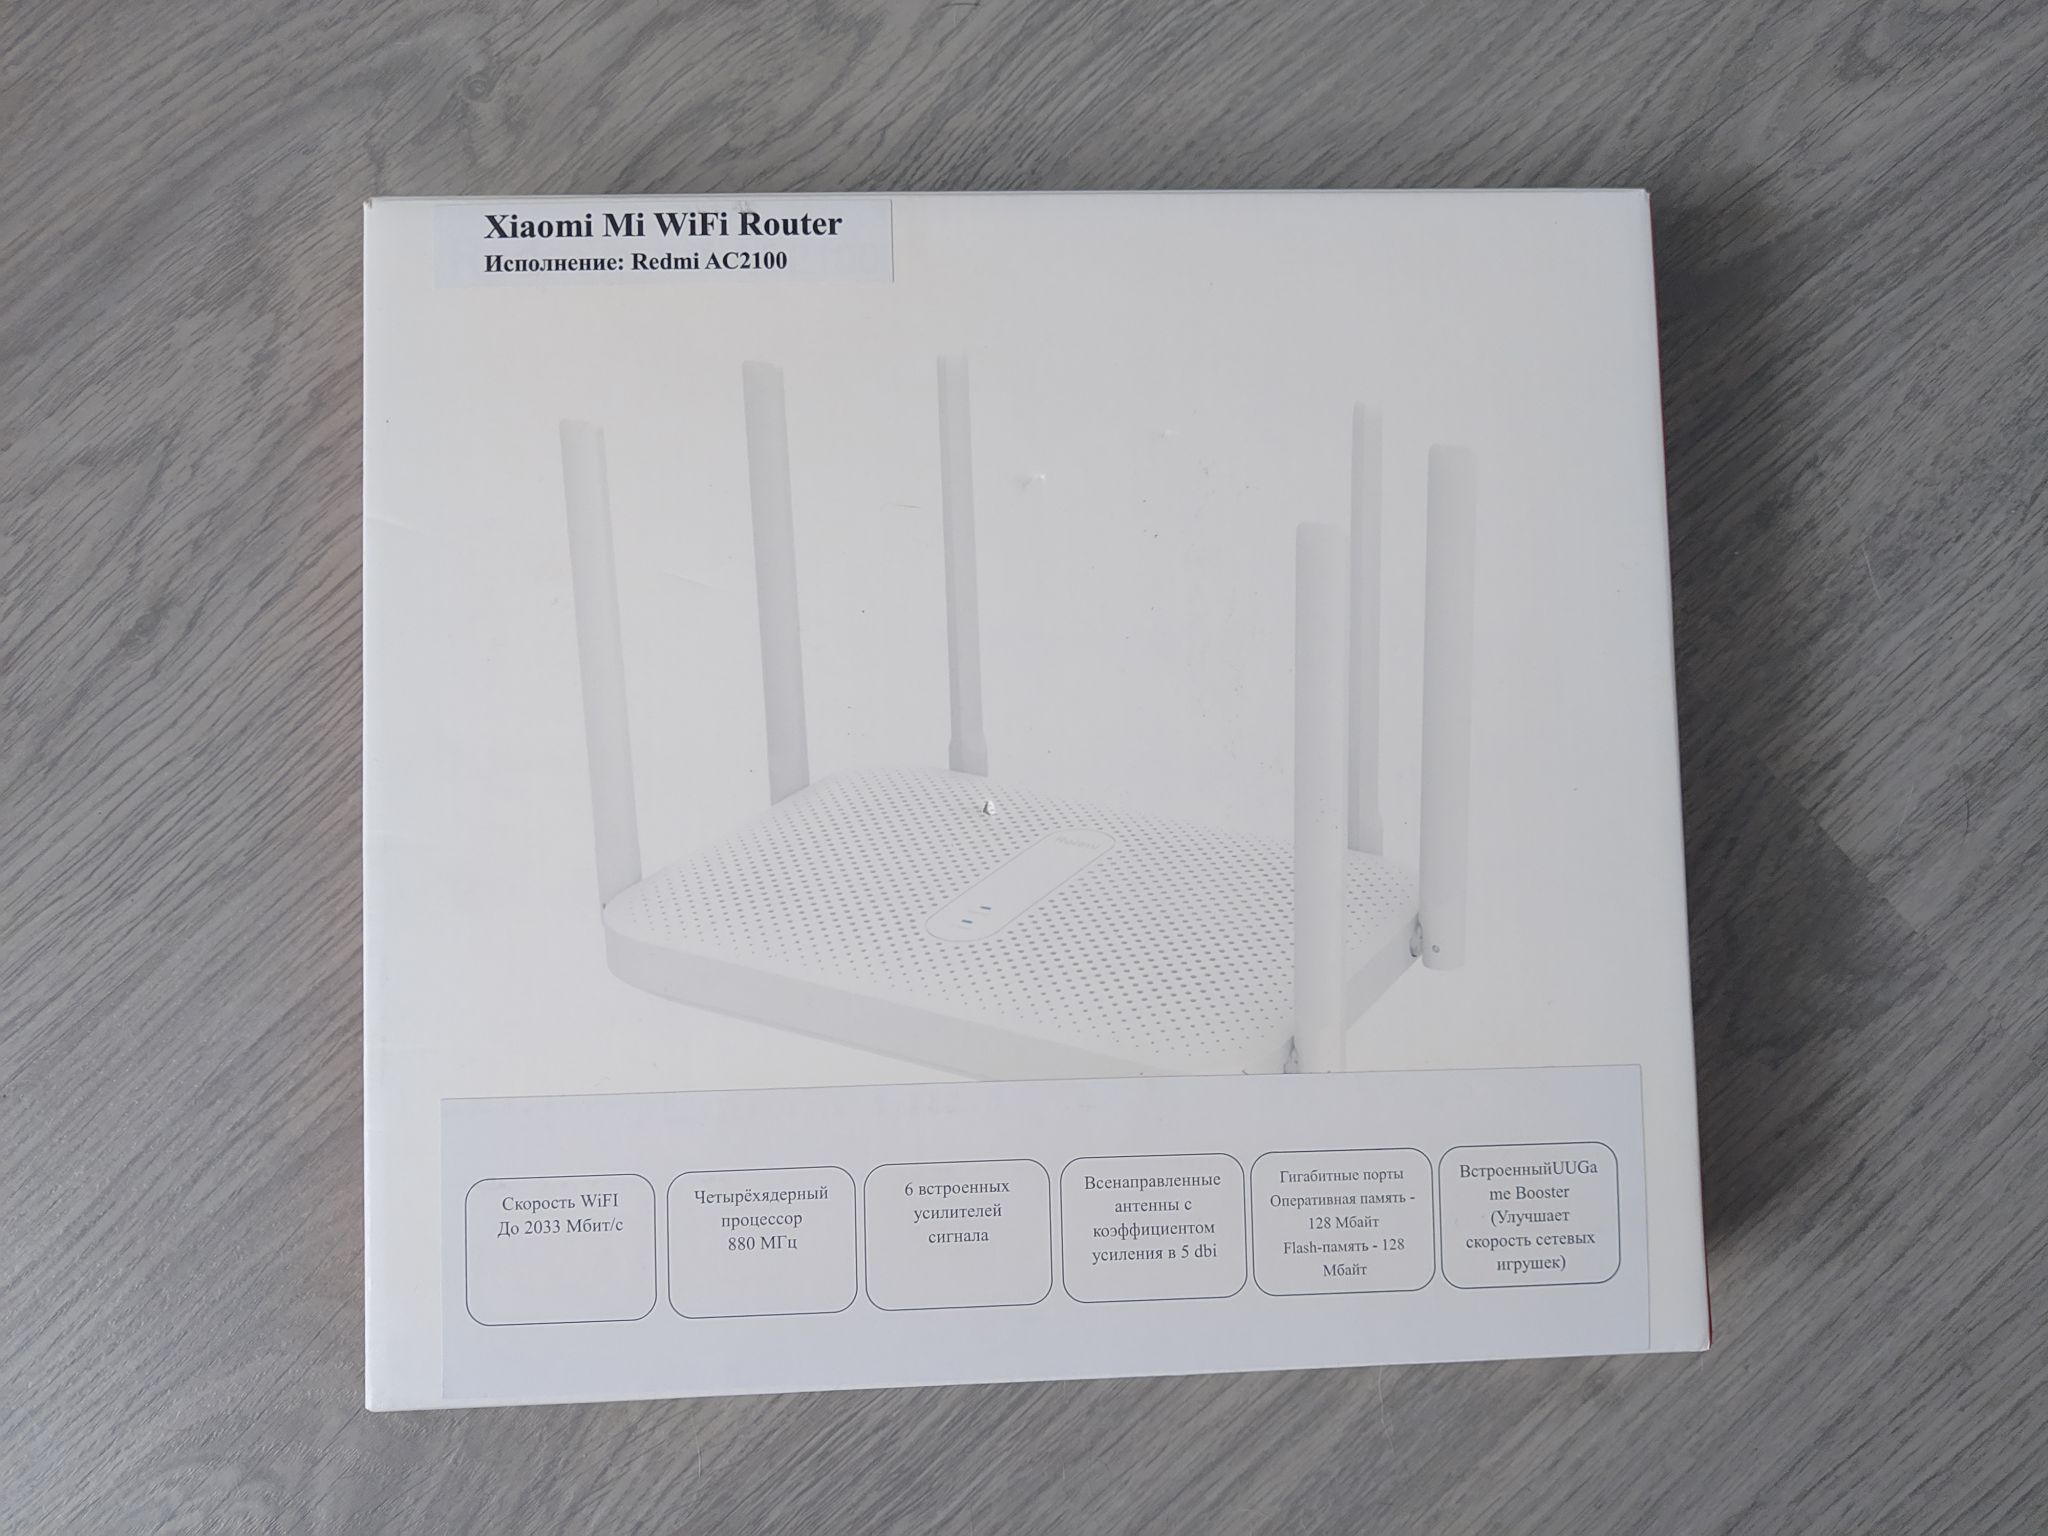 Xiaomi Redmi Router Ac2100 White